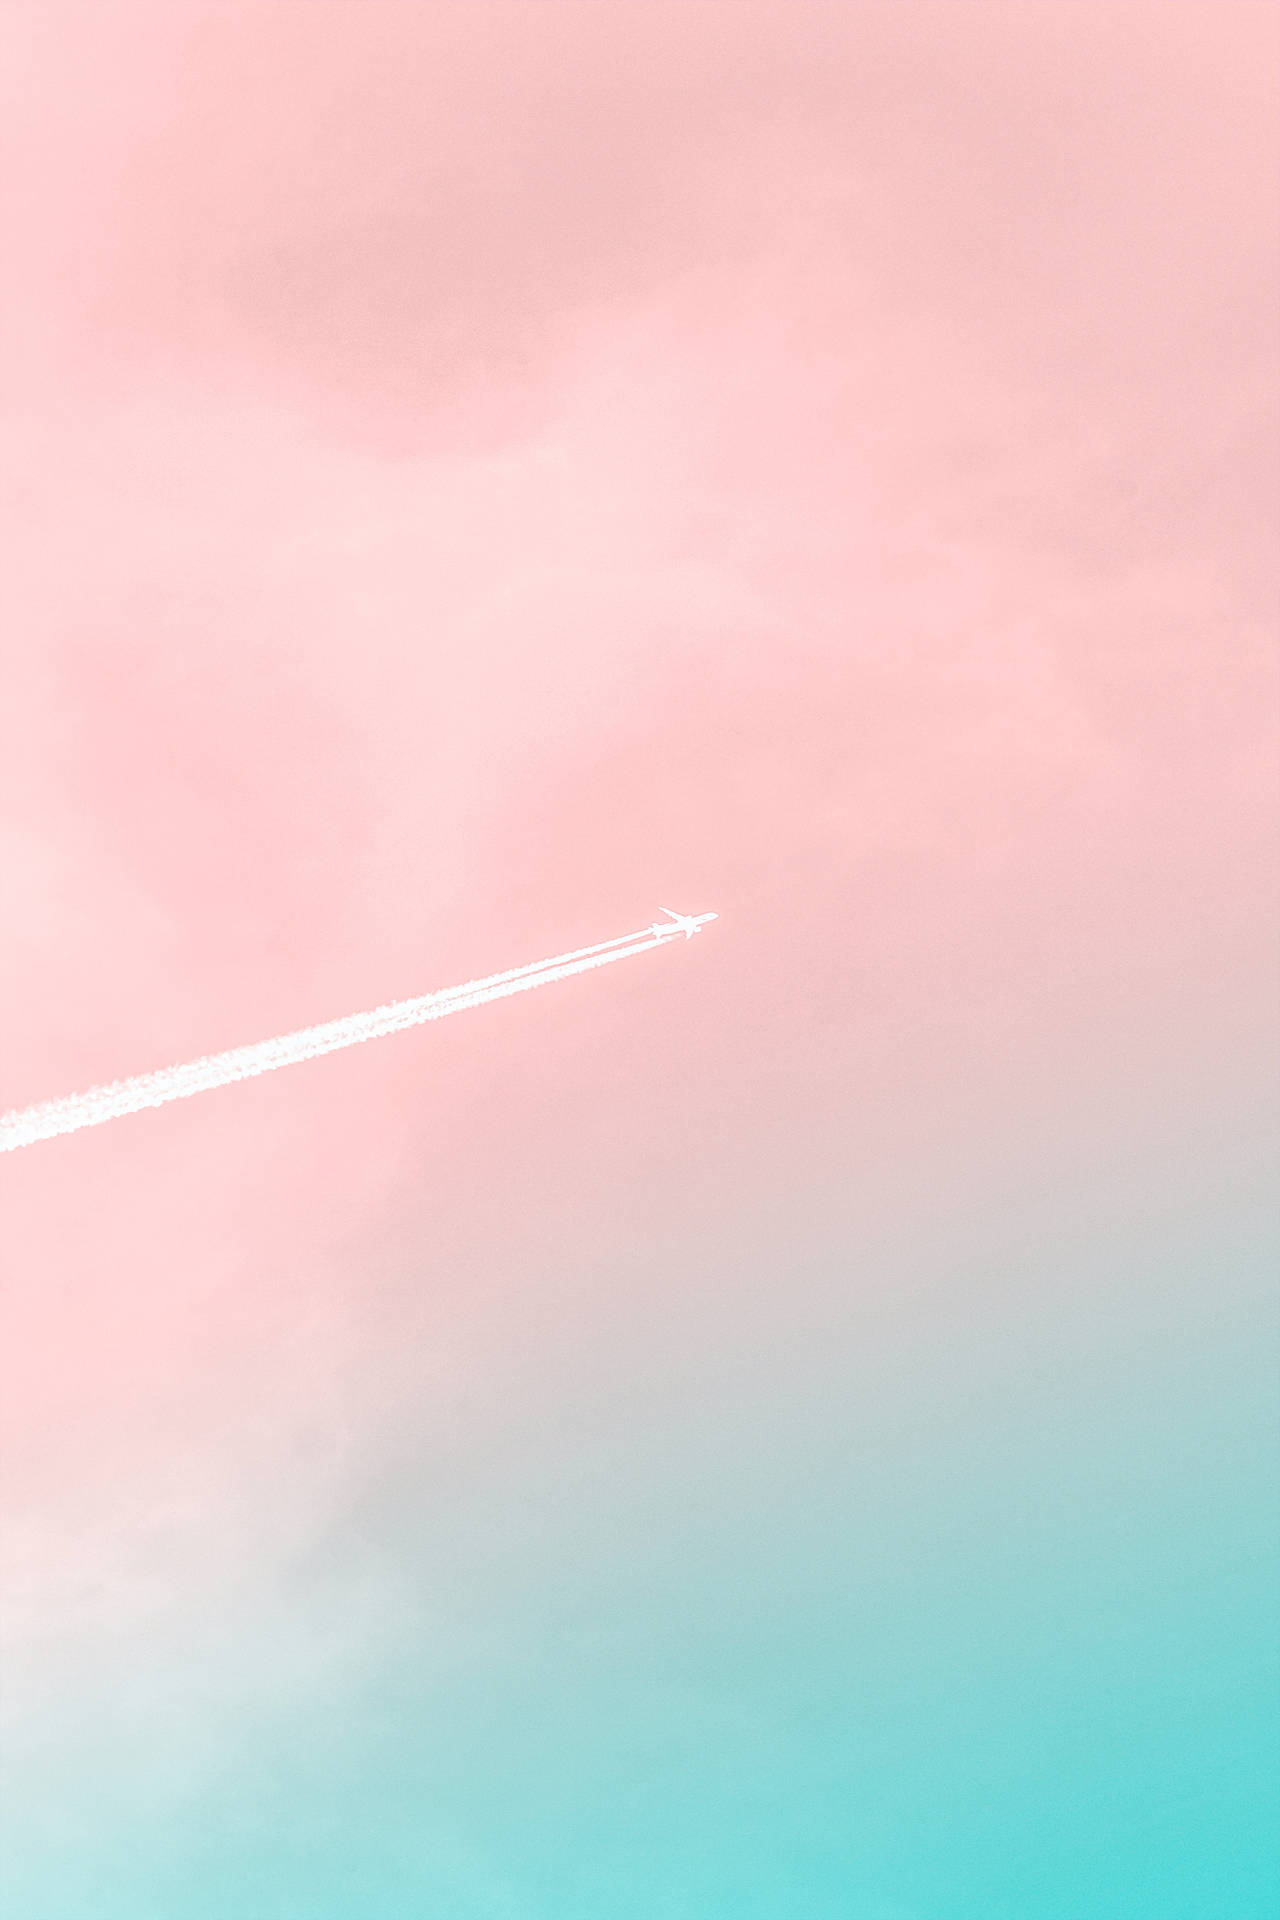 Fedeste Iphone Pink Skies Wallpaper